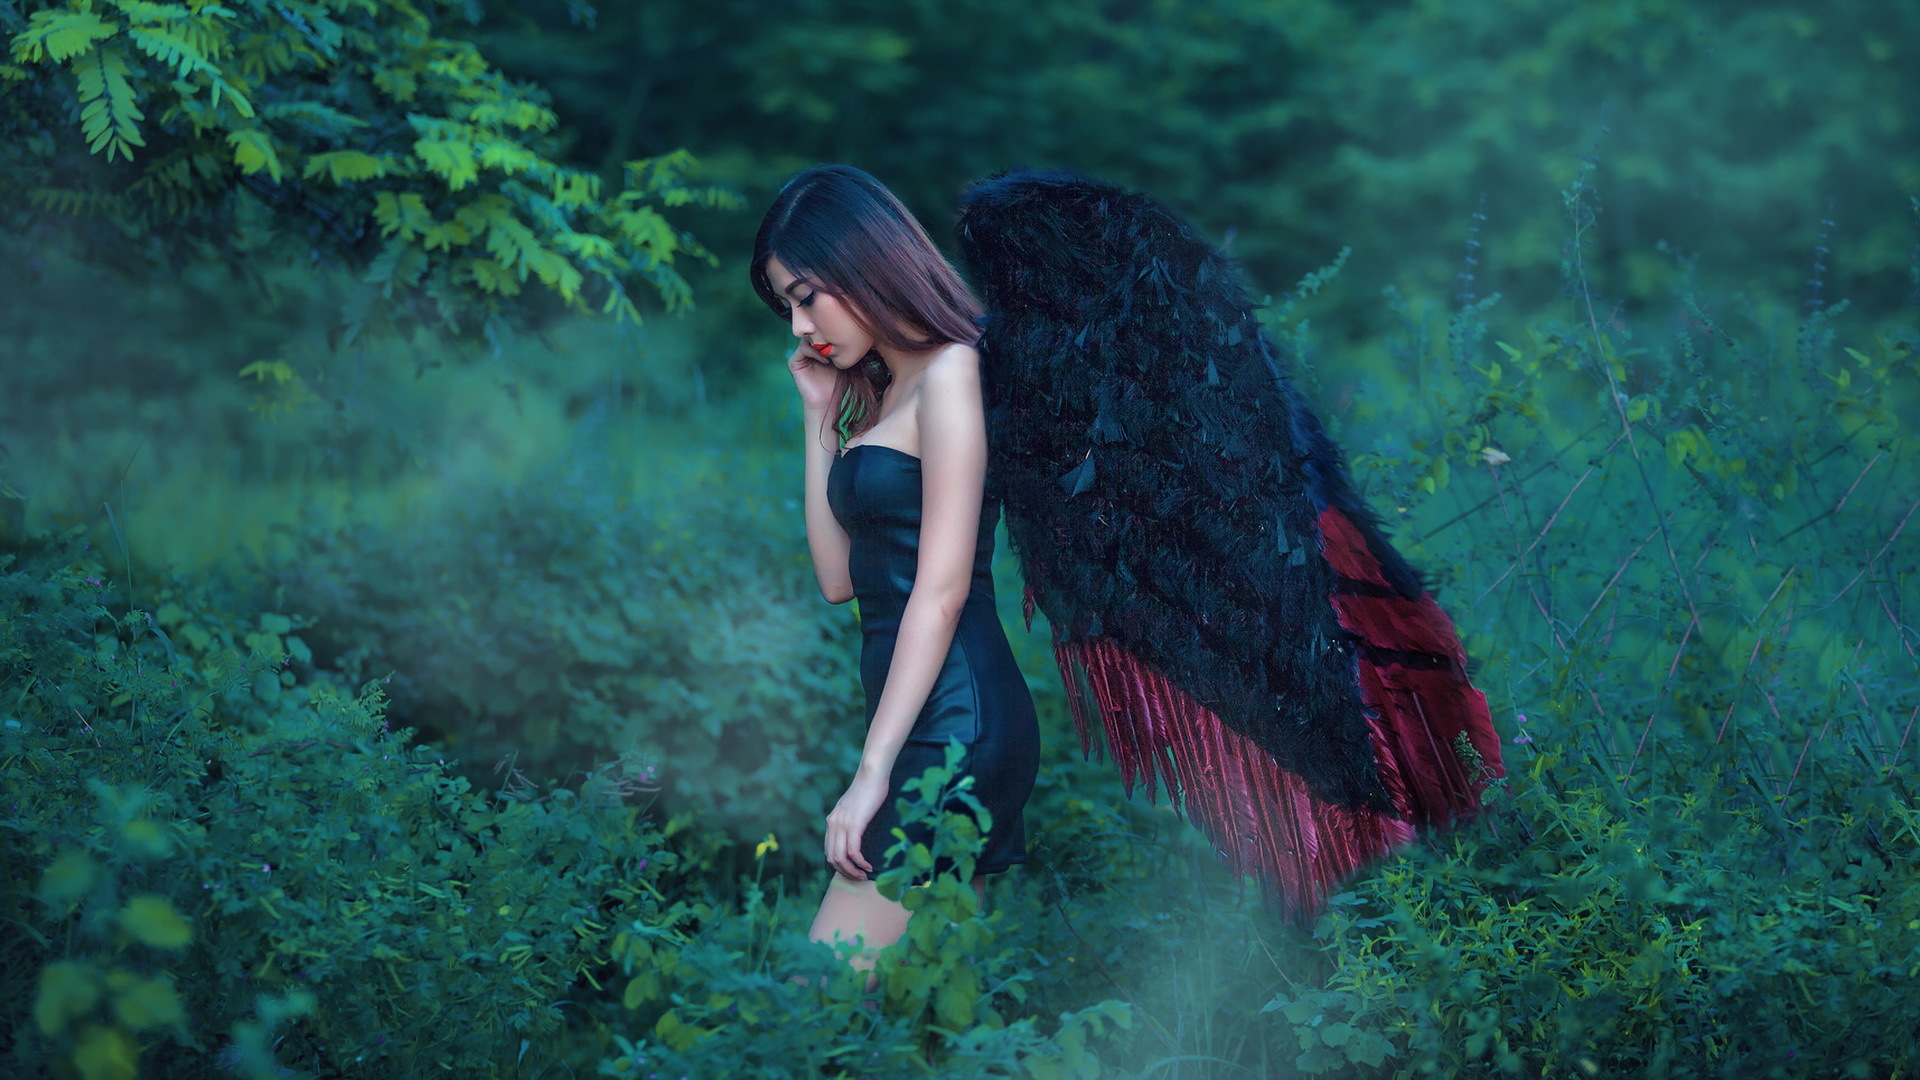 女孩,唯美,天使,翅膀,森林,美女,超清壁纸